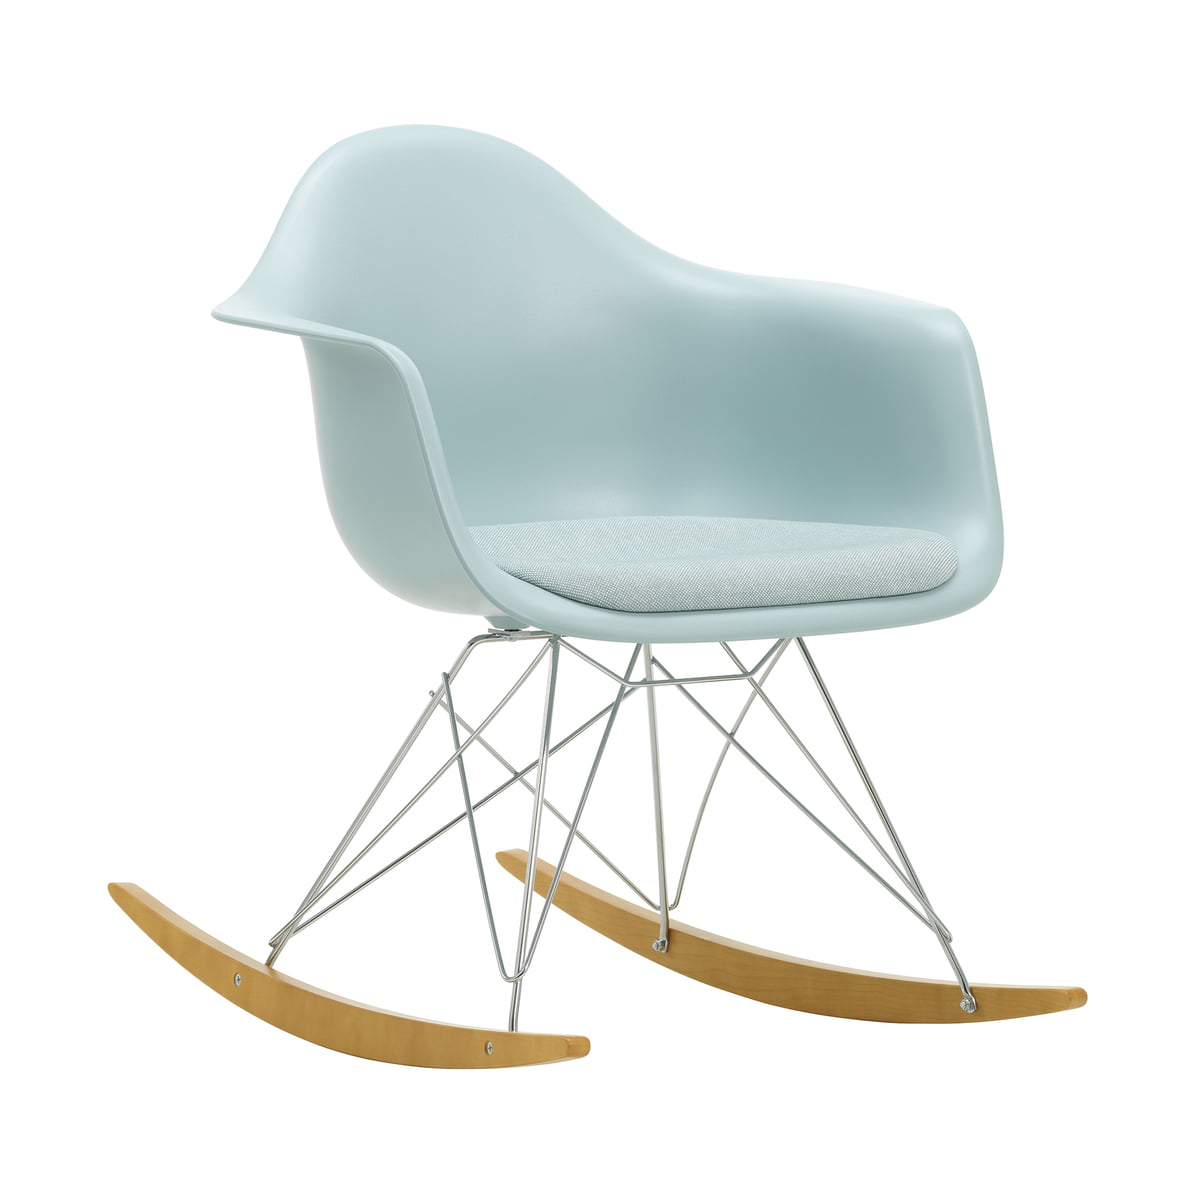 Meyella Haiku Omgekeerde Vitra - Eames kunststof fauteuil rar (gepolsterd) | Connox